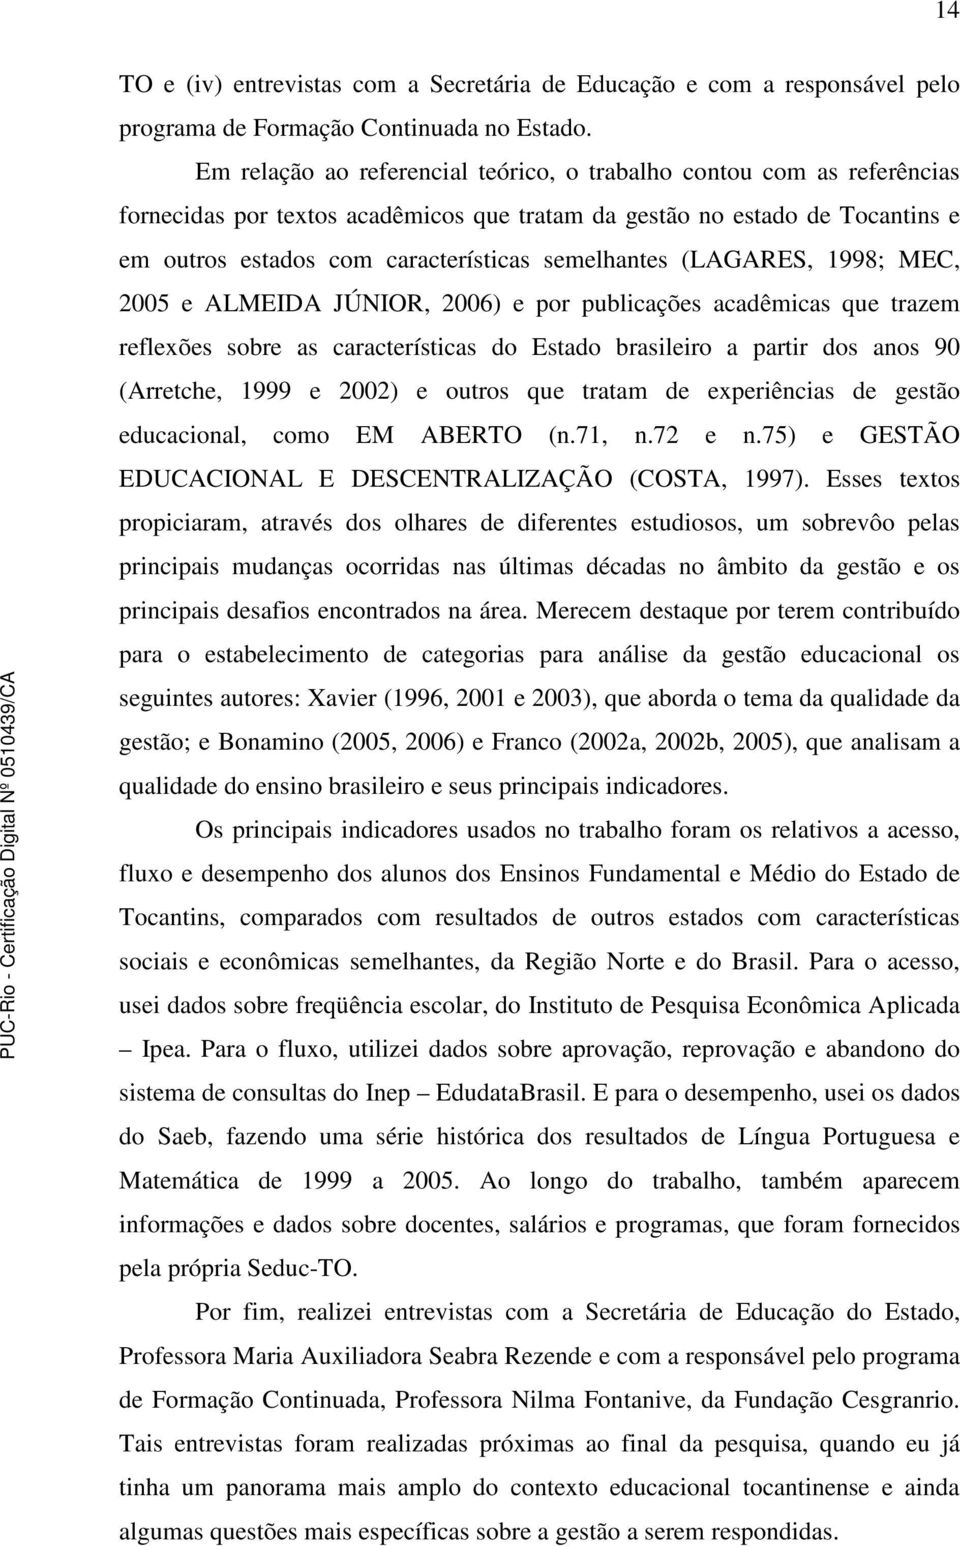 semelhantes (LAGARES, 1998; MEC, 2005 e ALMEIDA JÚNIOR, 2006) e por publicações acadêmicas que trazem reflexões sobre as características do Estado brasileiro a partir dos anos 90 (Arretche, 1999 e